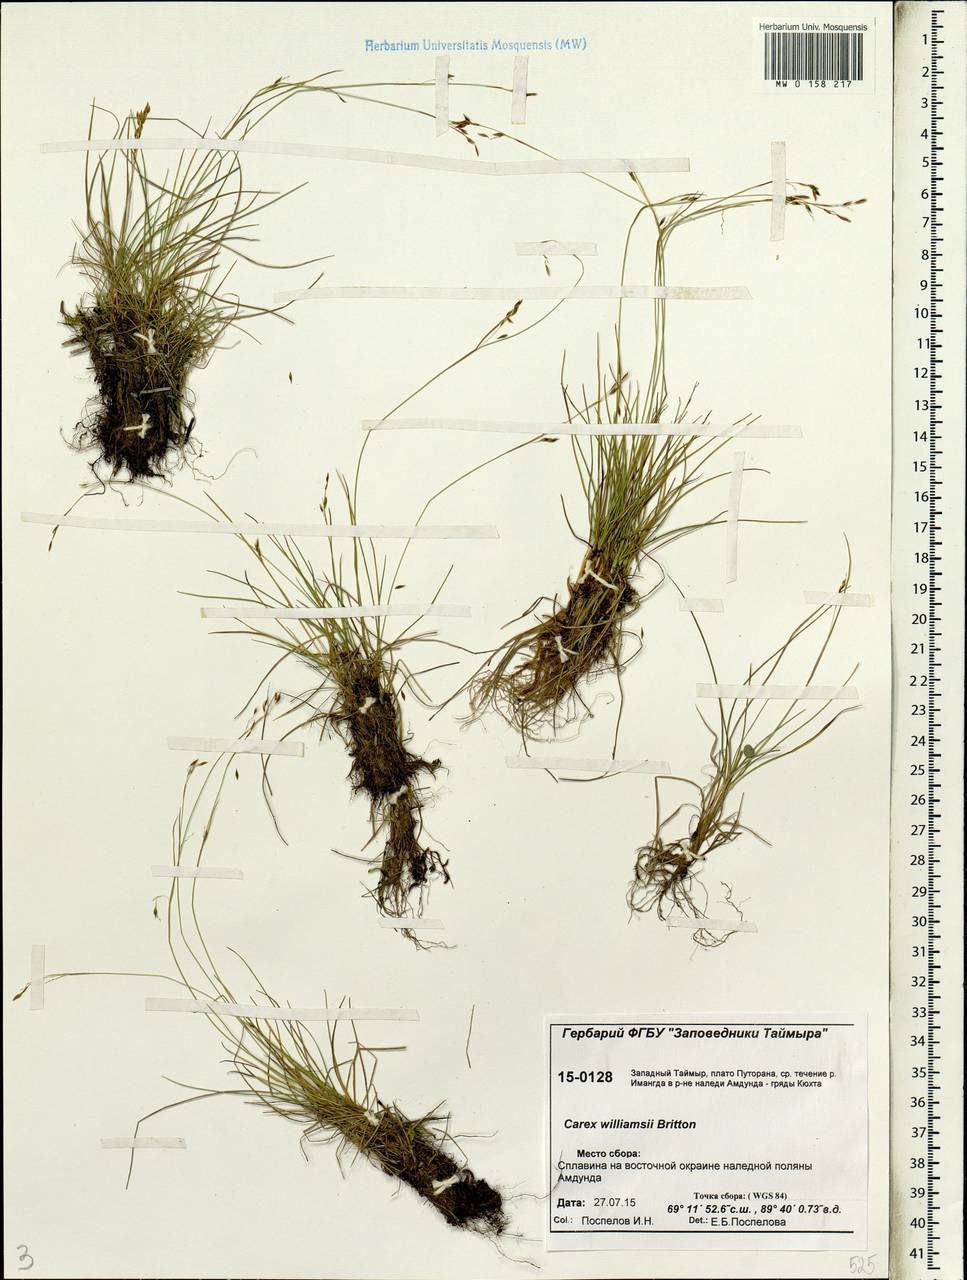 Carex williamsii Britton, Siberia, Central Siberia (S3) (Russia)